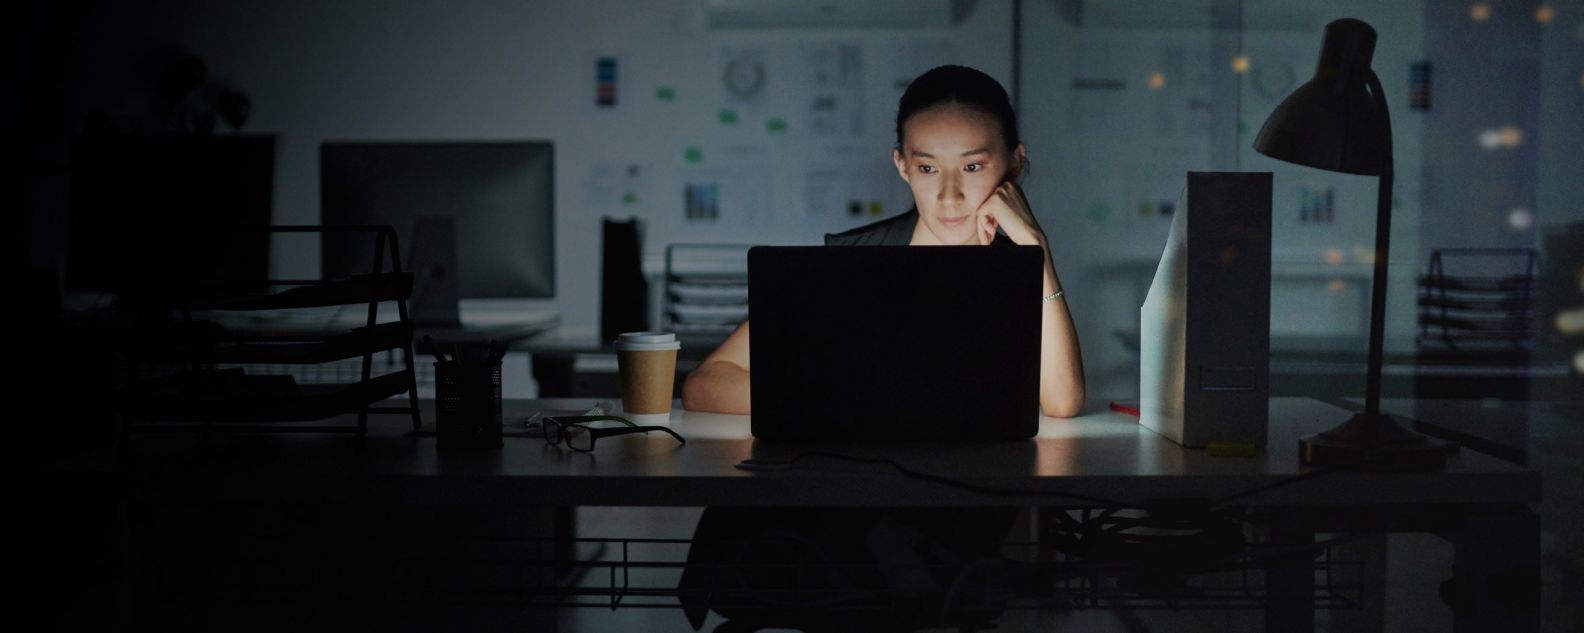 Frau arbeitet konzentriert mit ihrem Laptop in einem dunklen Raum